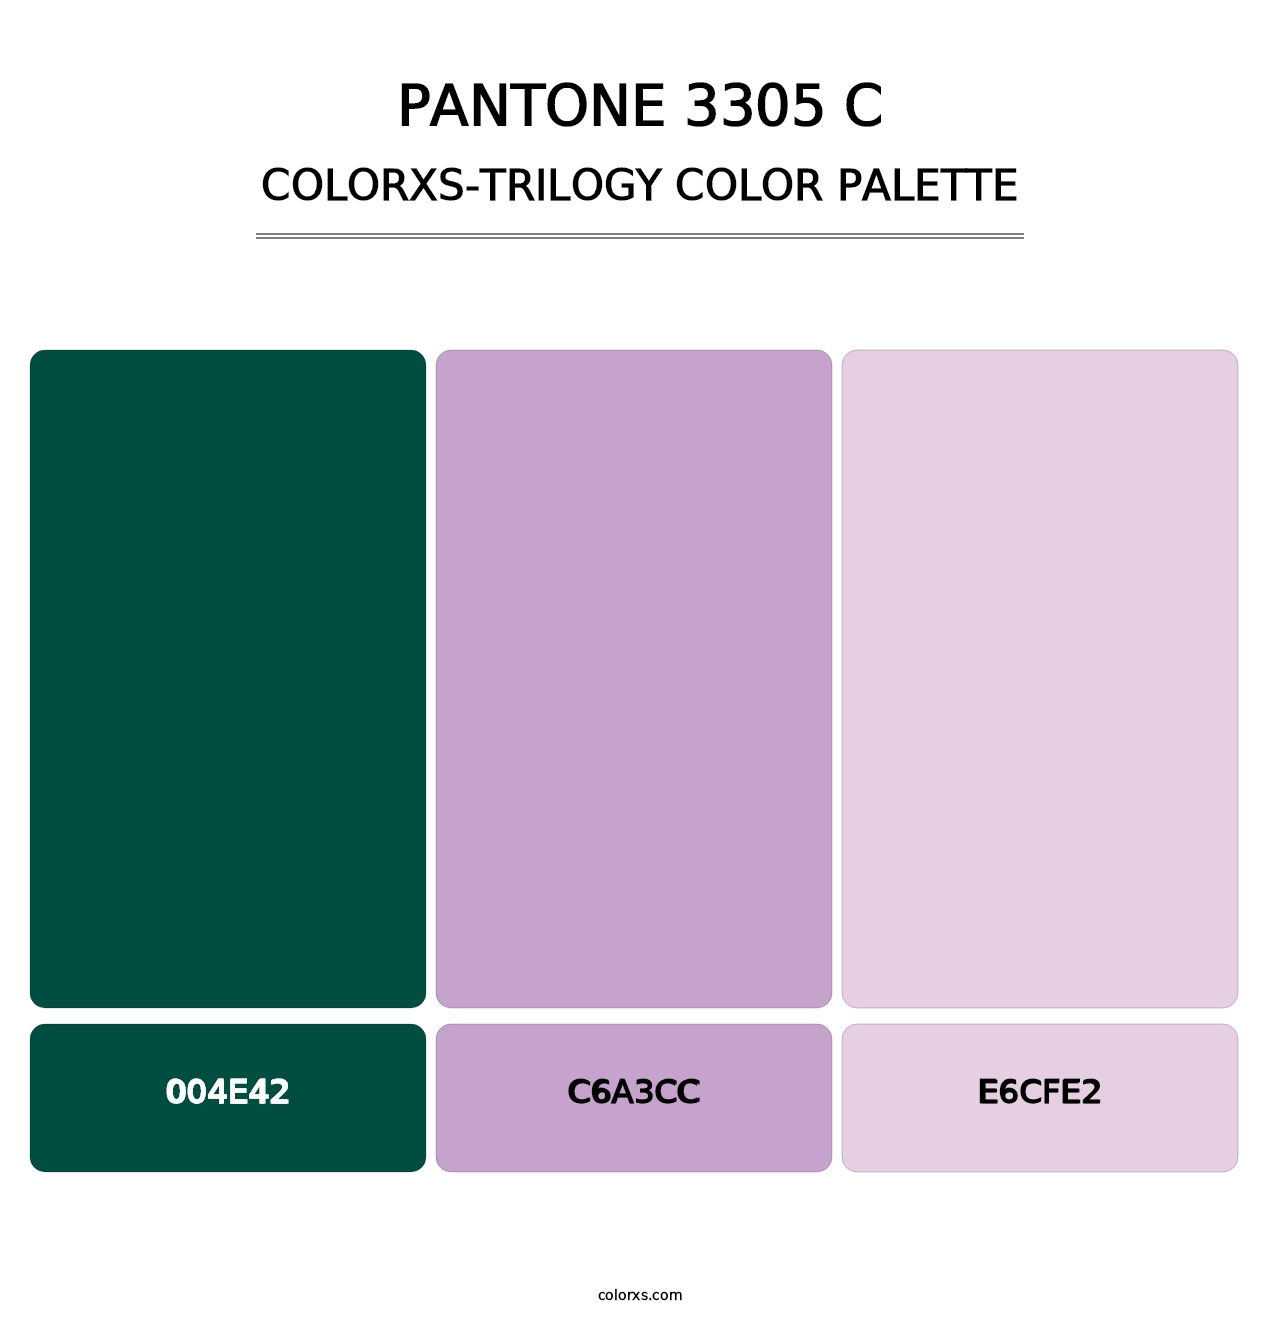 PANTONE 3305 C - Colorxs Trilogy Palette